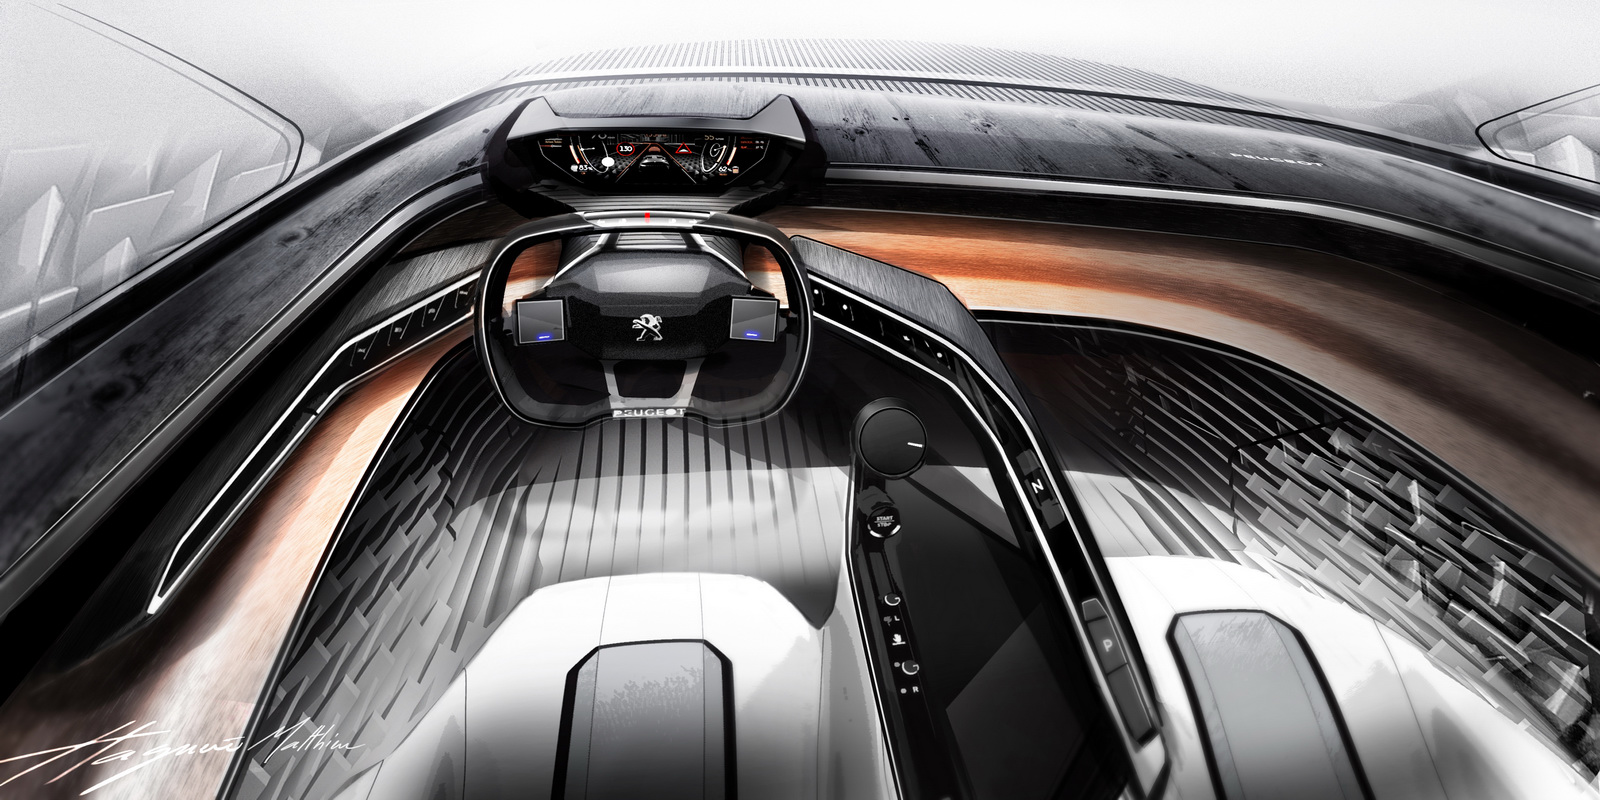 Peugeot Fractal Concept, 2015 - Interior Design Sketch